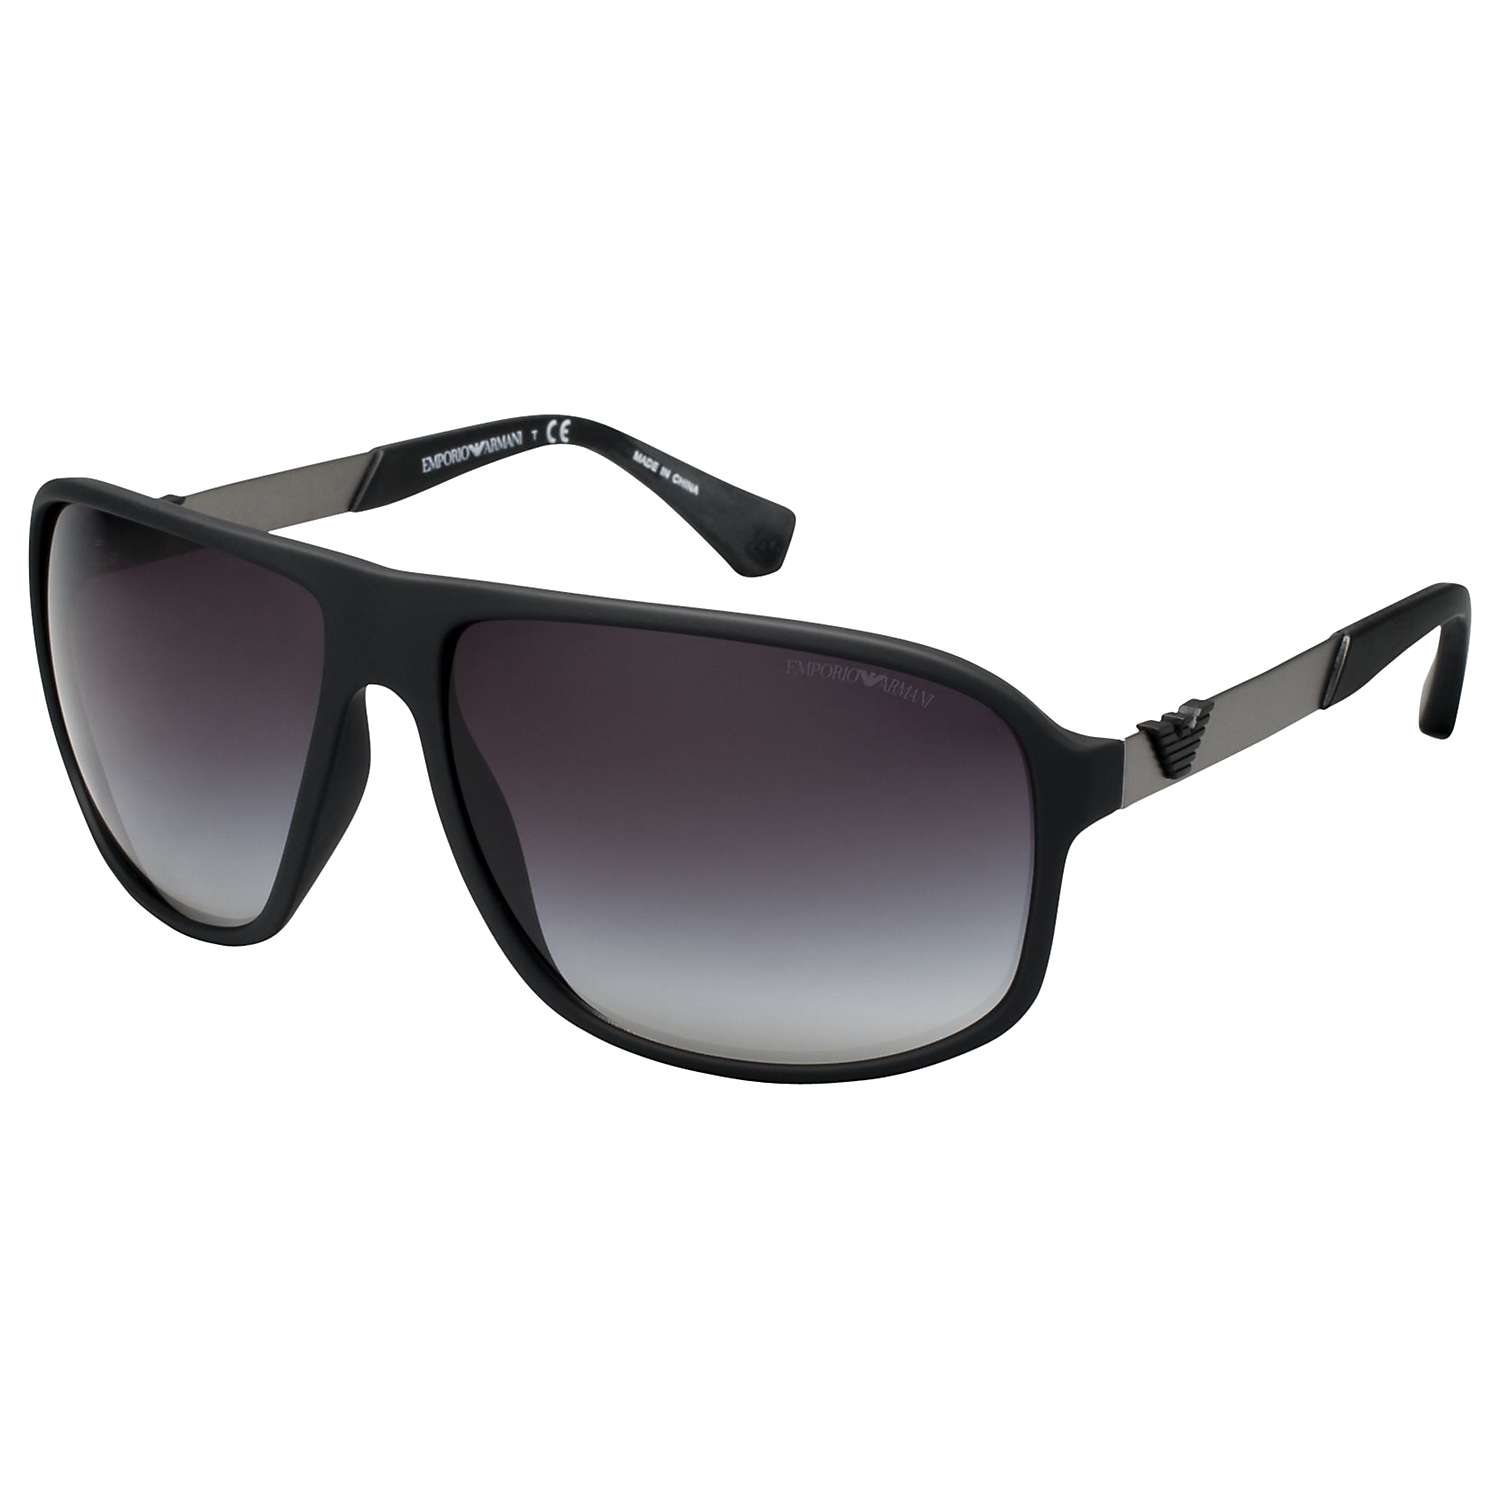 Buy Emporio Armani EA4029 Men's Square Sunglasses Online at johnlewis.com